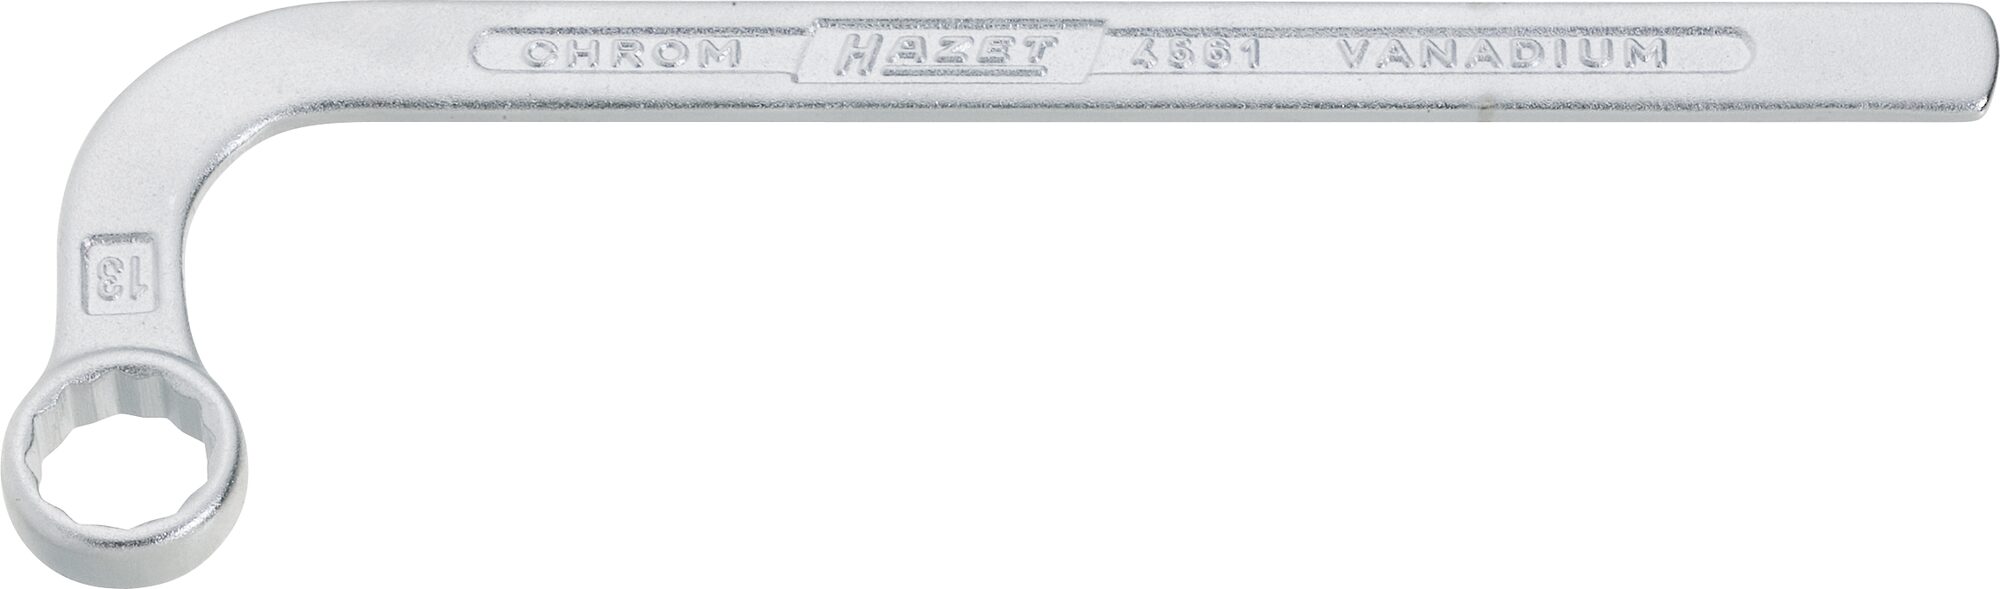 HAZET Einspritzpumpen-Werkzeug 4561 · Außen Doppel-Sechskant Profil · 13 mm